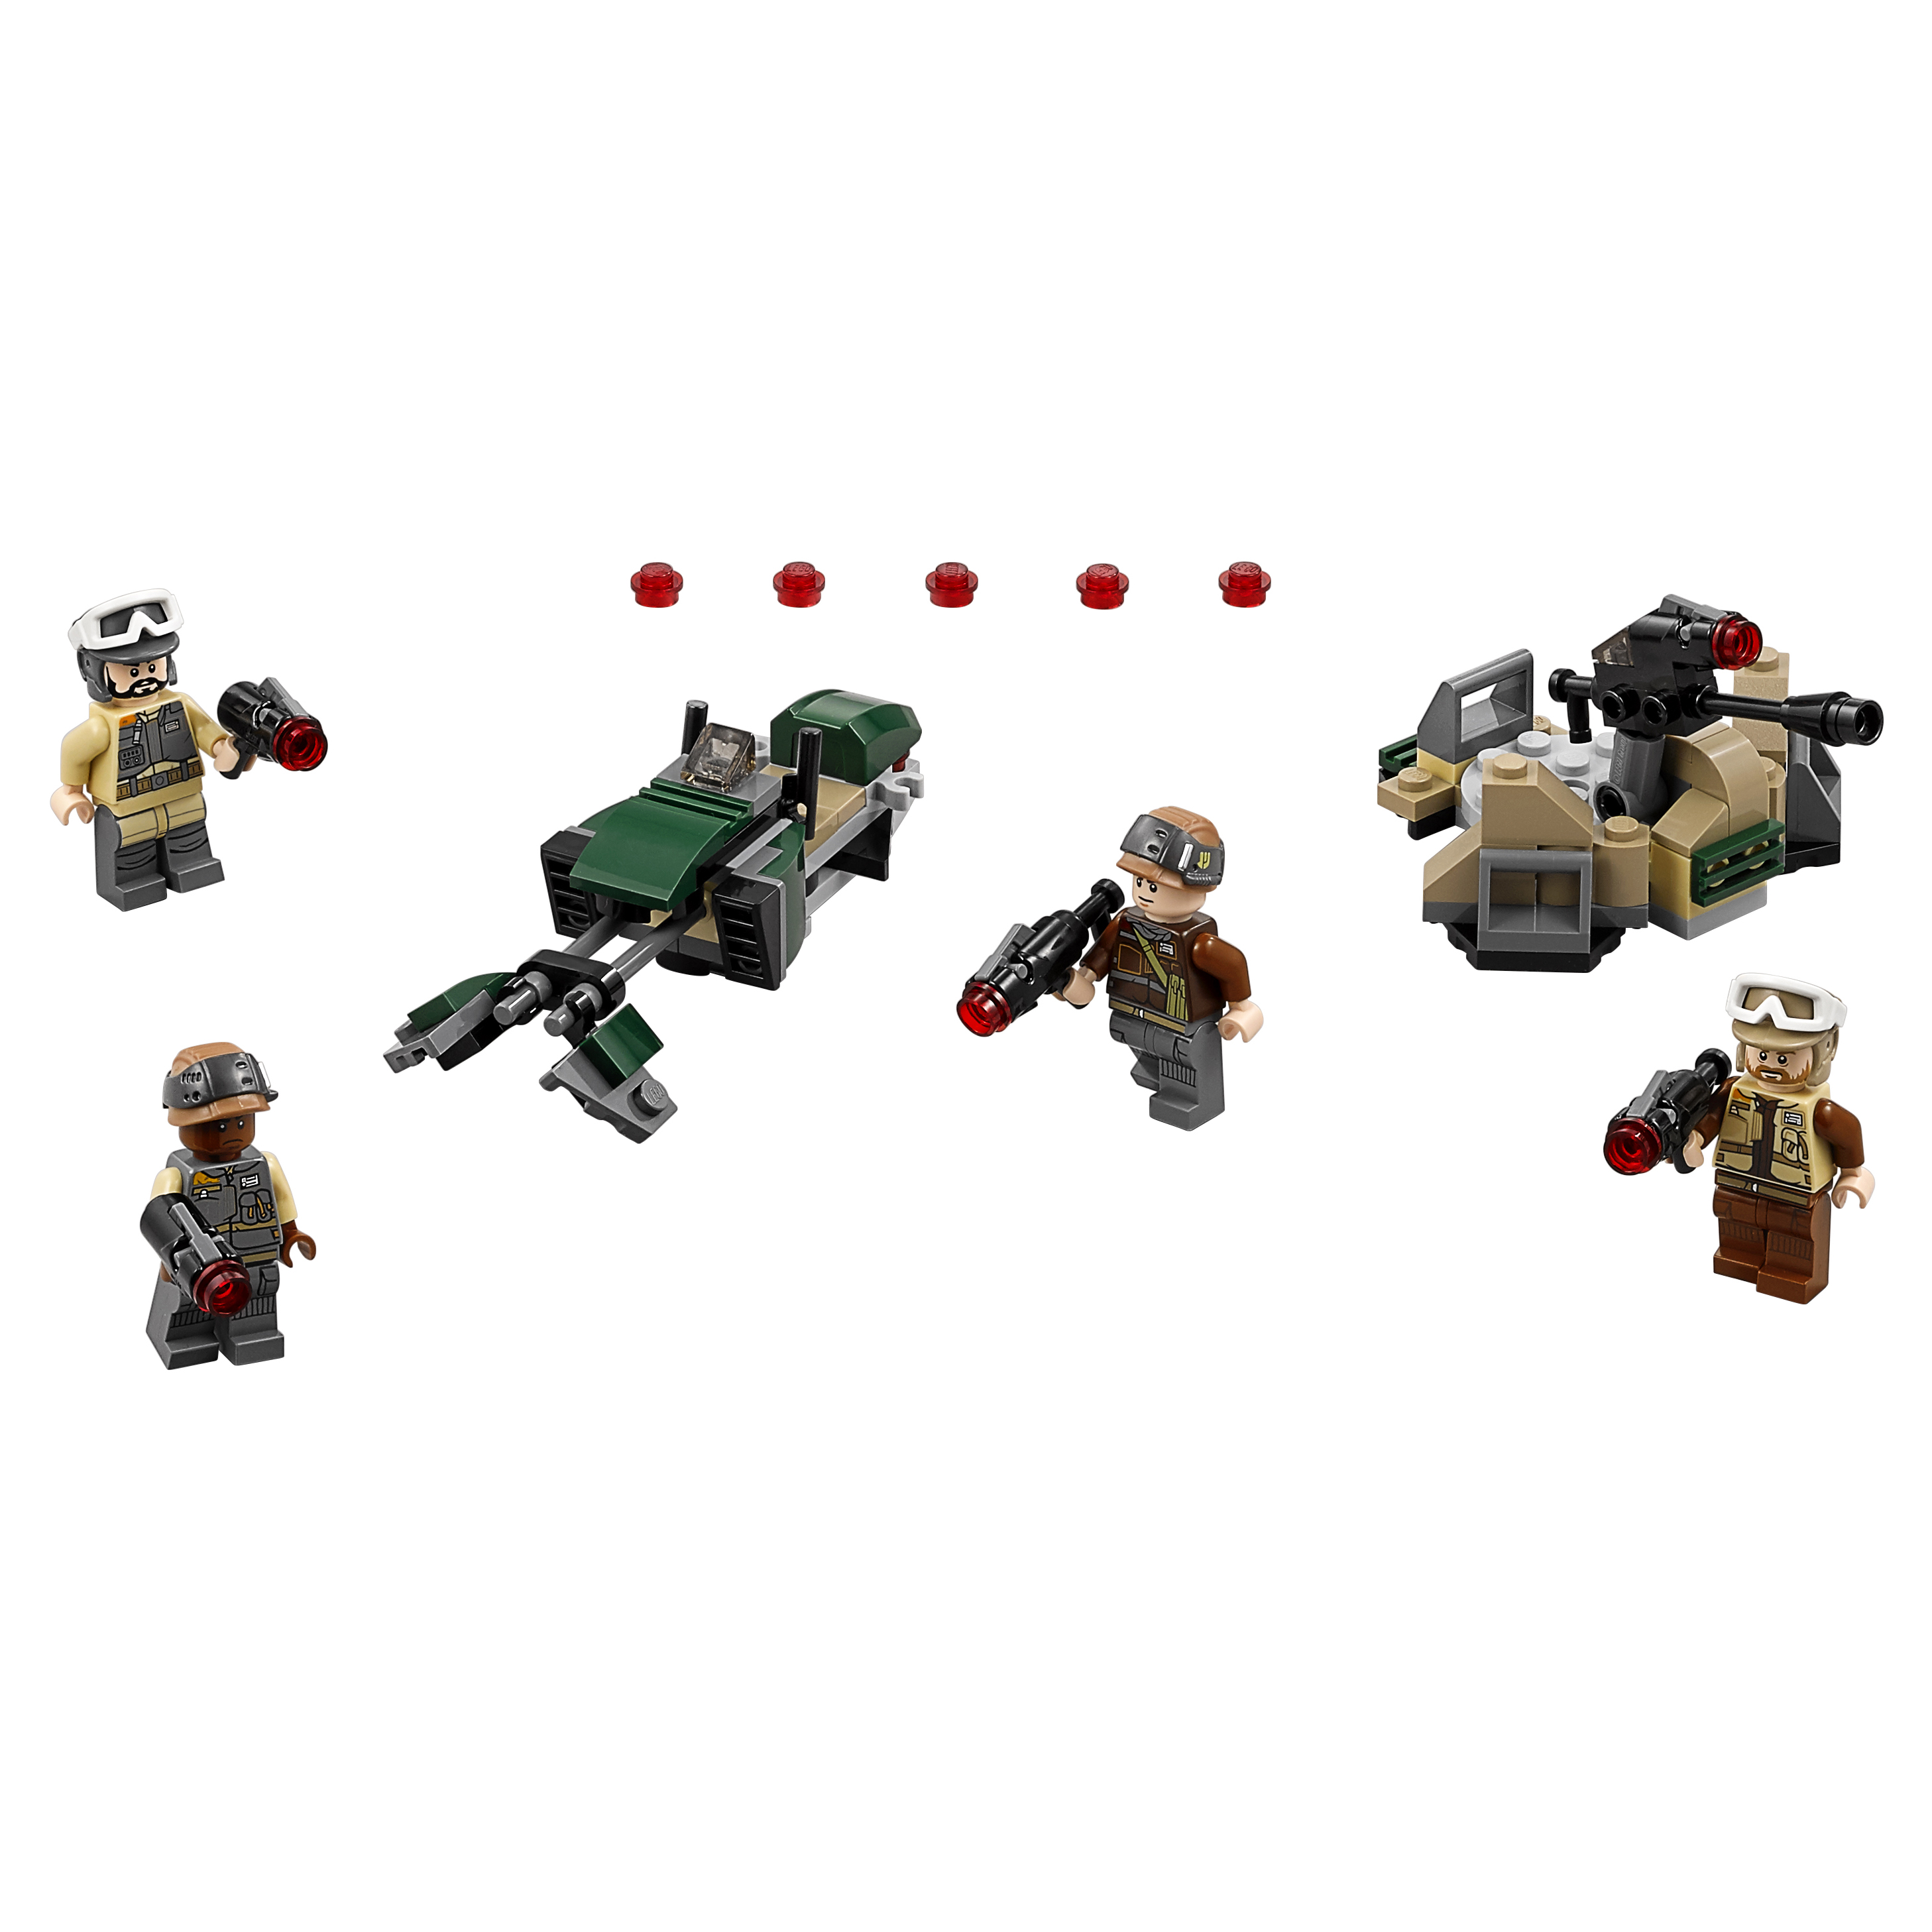 Конструктор LEGO Star Wars Боевой набор Повстанцев (75164) конструктор lego кирпич 1 х 4 красный набор из 50 шт 301021